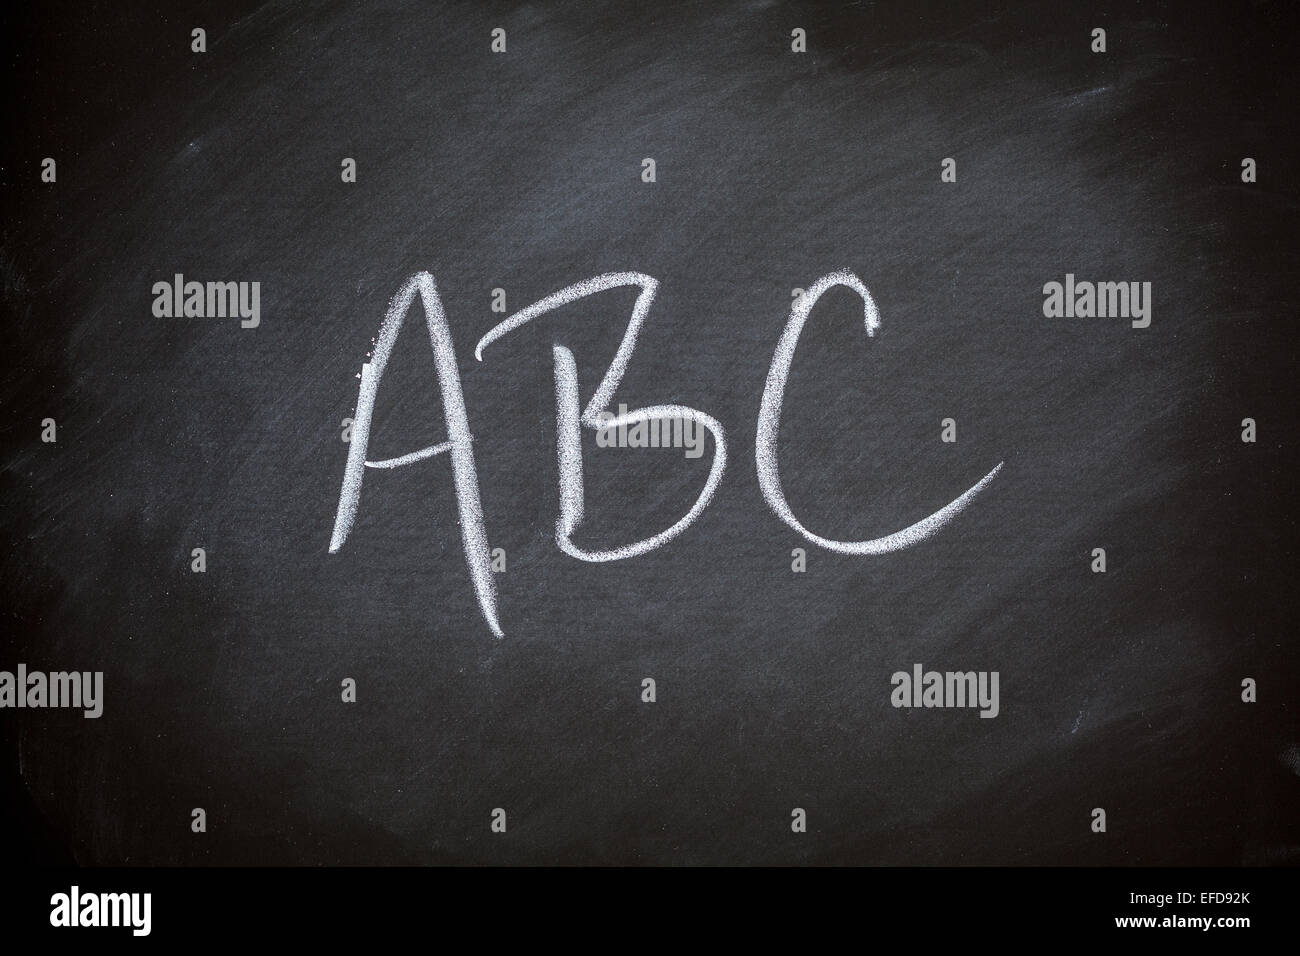 Pizarra pizarra estilo retro de fondo gris carbón alfabeto ABC Pizarra Foto de stock